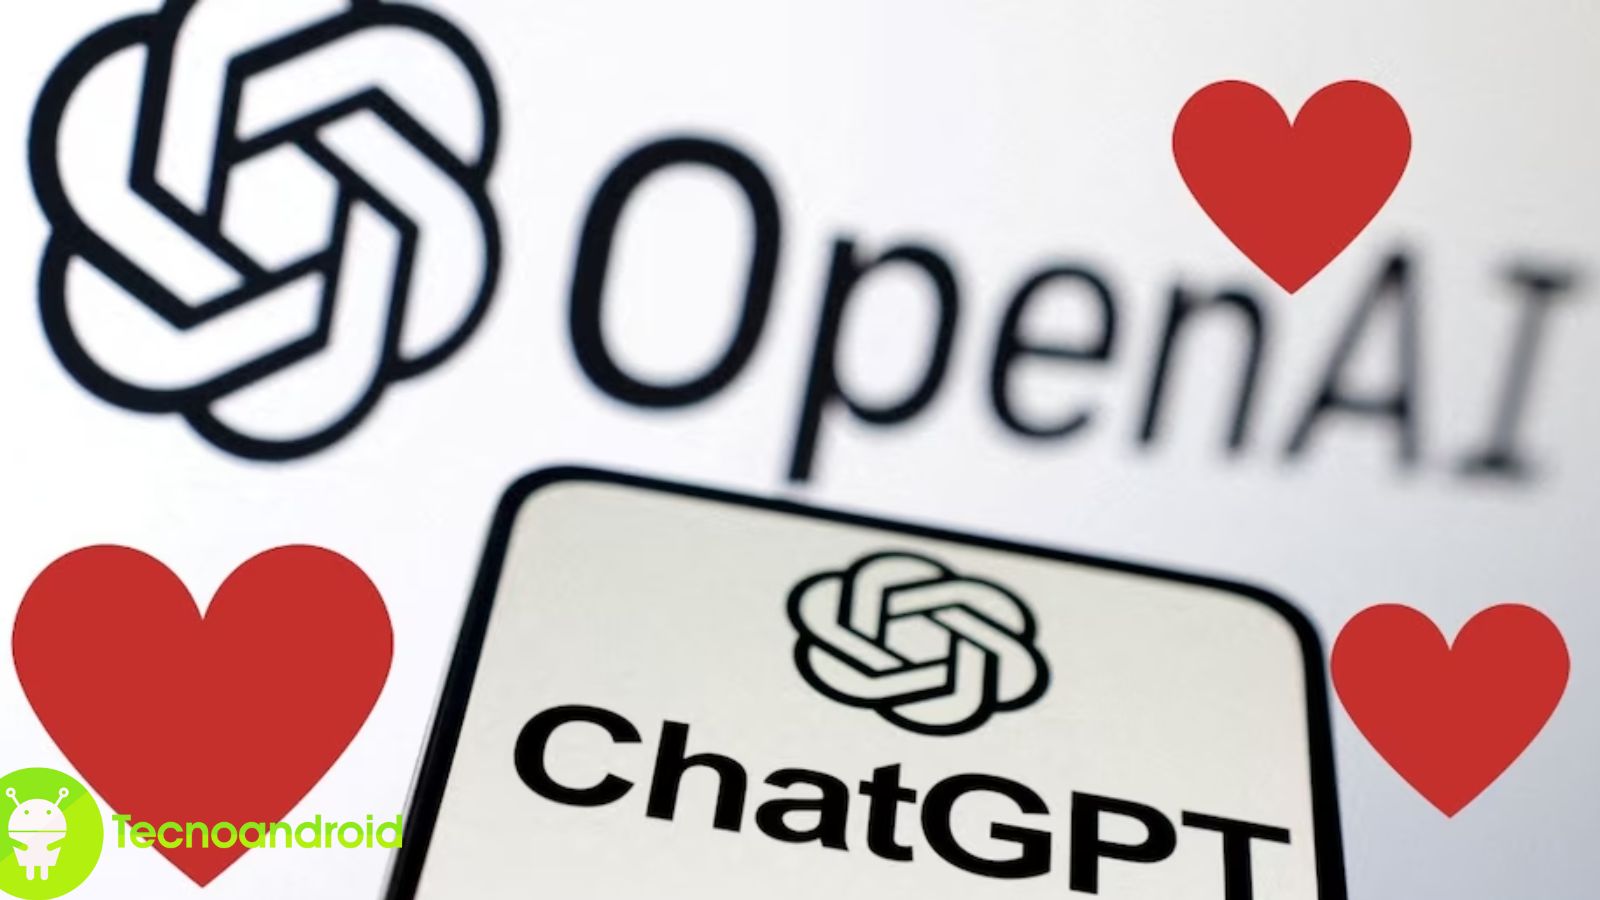 ChatGPT ha scritto un comunicato stampa dove annuncia la collaborazione tra MatchGroup e OpenAI 